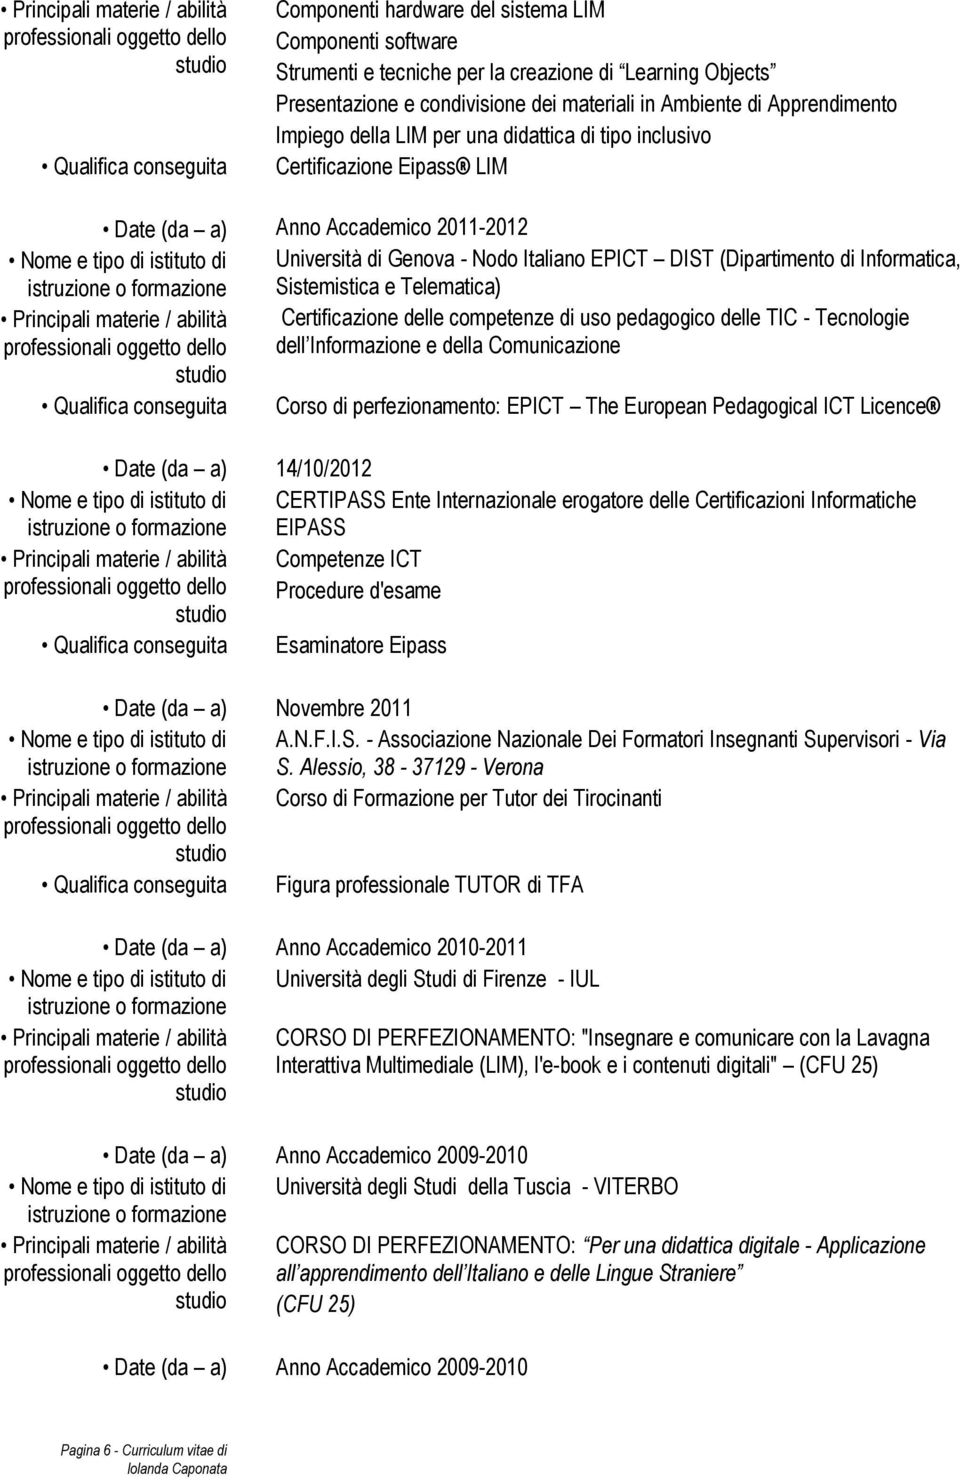 Genova - Nodo Italiano EPICT DIST (Dipartimento di Informatica, Sistemistica e Telematica) Principali materie / abilità Certificazione delle competenze di uso pedagogico delle TIC - Tecnologie dell